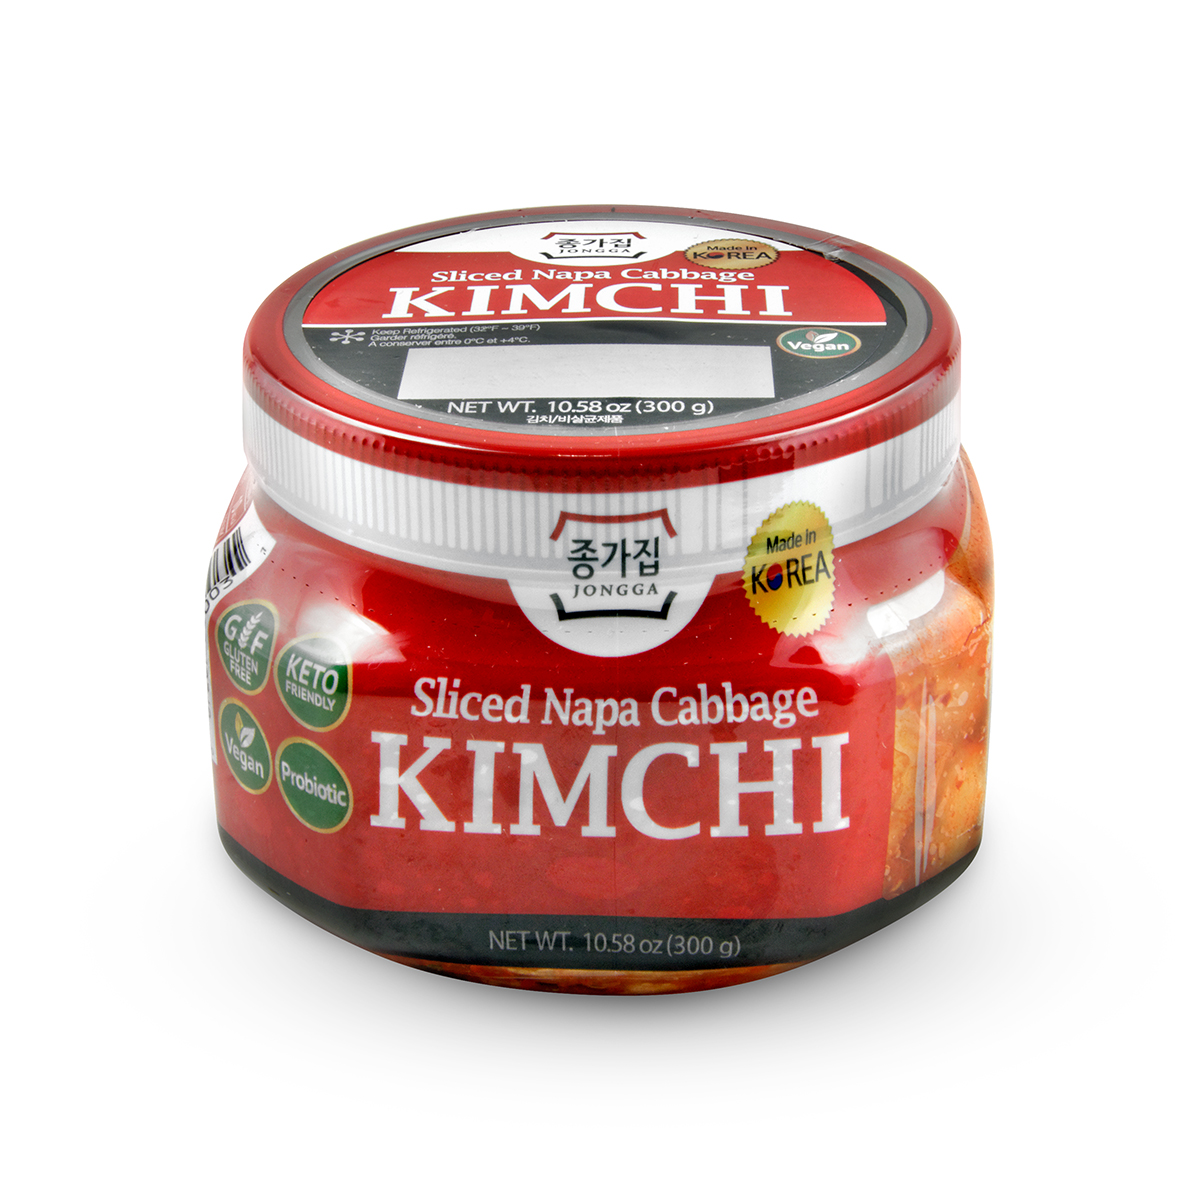 Exclusiv in magazine - Kimchi Vegan JONGGA 300g, asianfood.ro